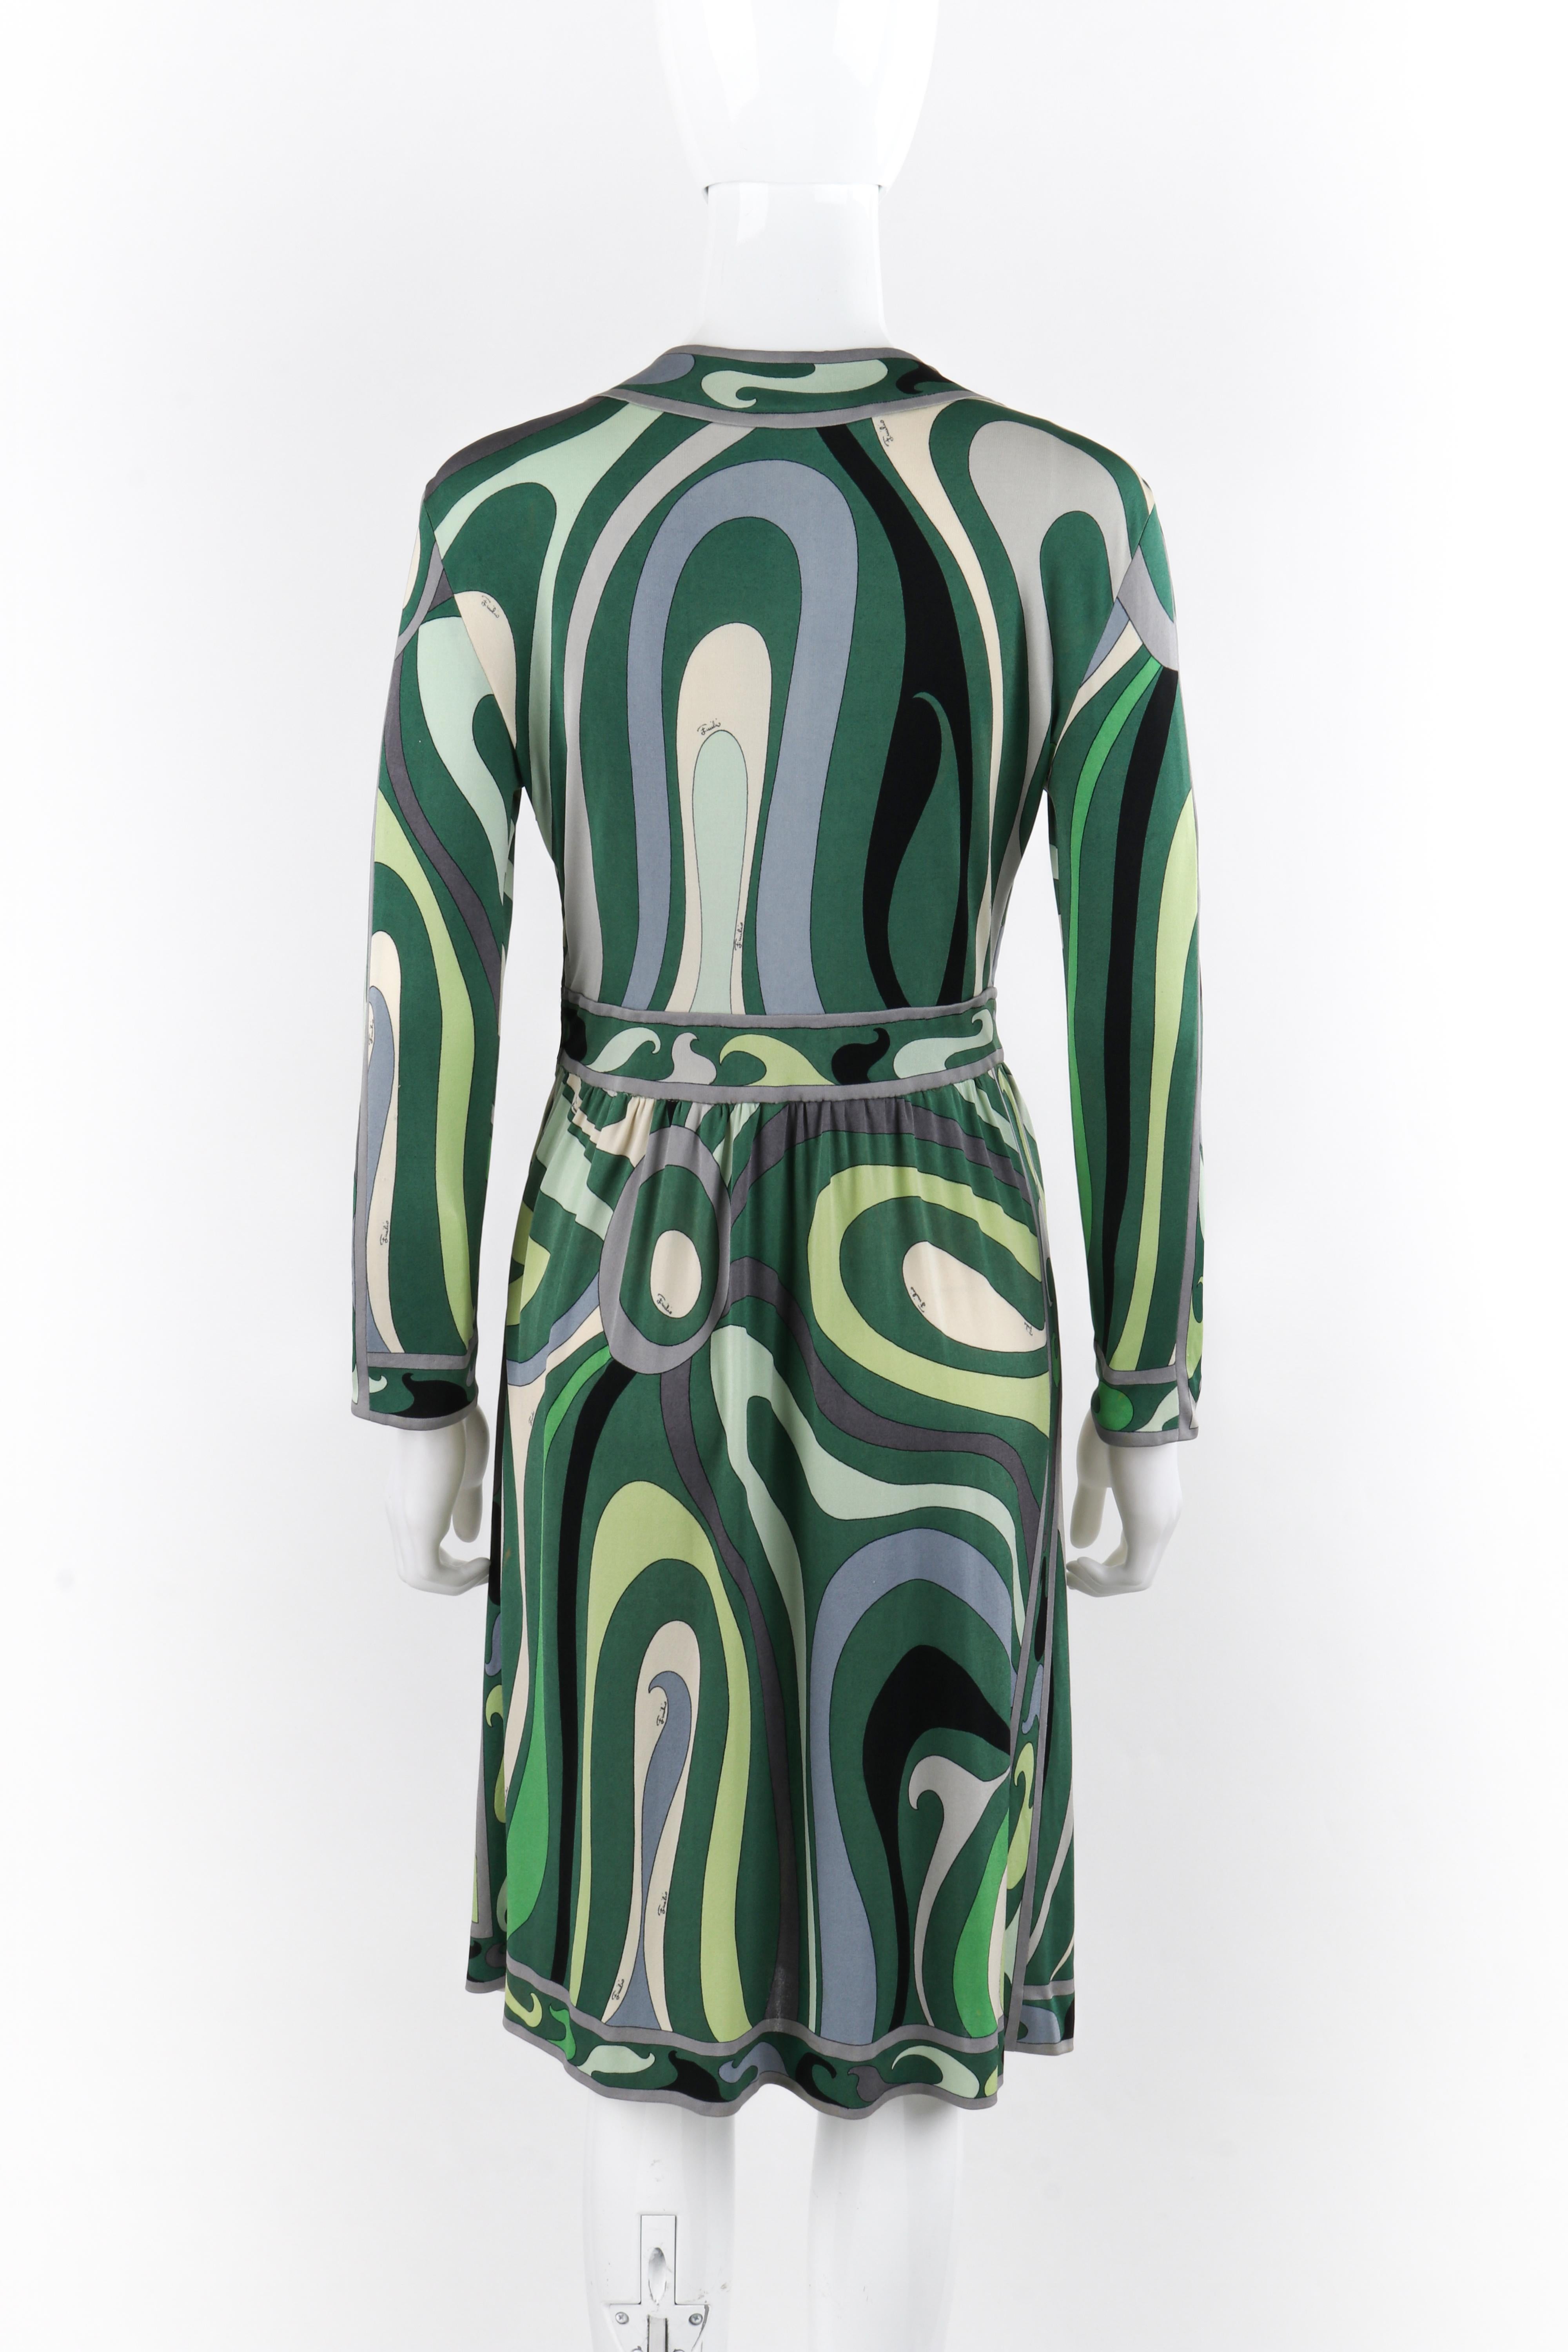 EMILIO PUCCI Robe droite en jersey de soie à manches longues Op Art caractéristique verte, années 1960 Pour femmes en vente